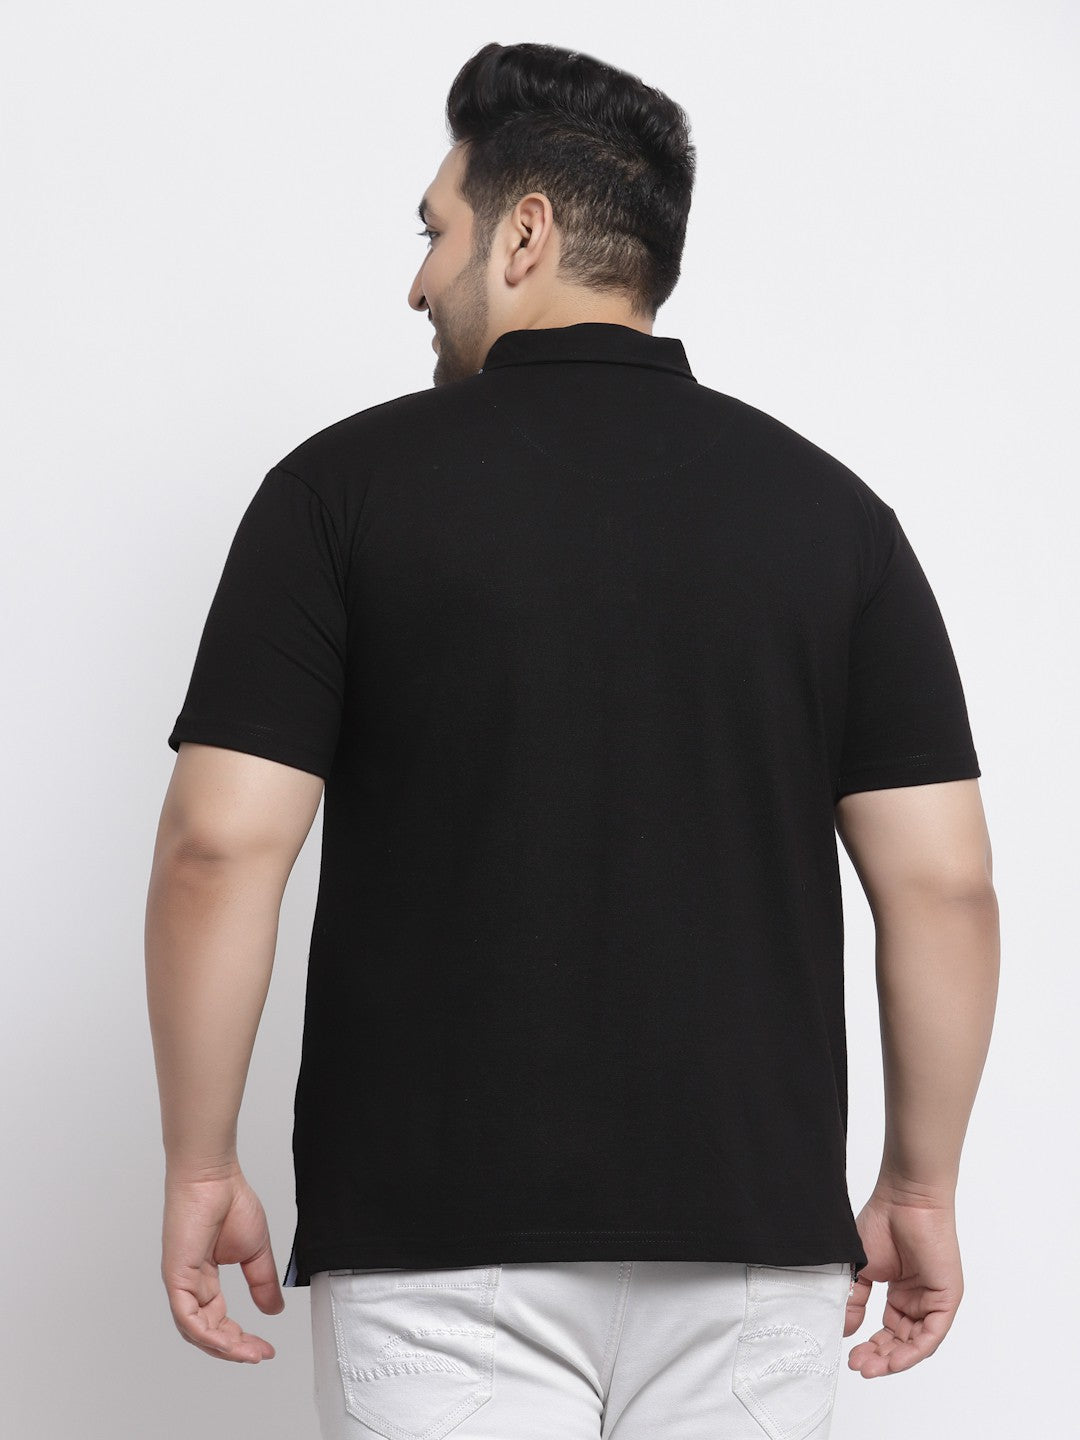 plusS Plus Size Men Black Polo Collar Pure Cotton T-shirt